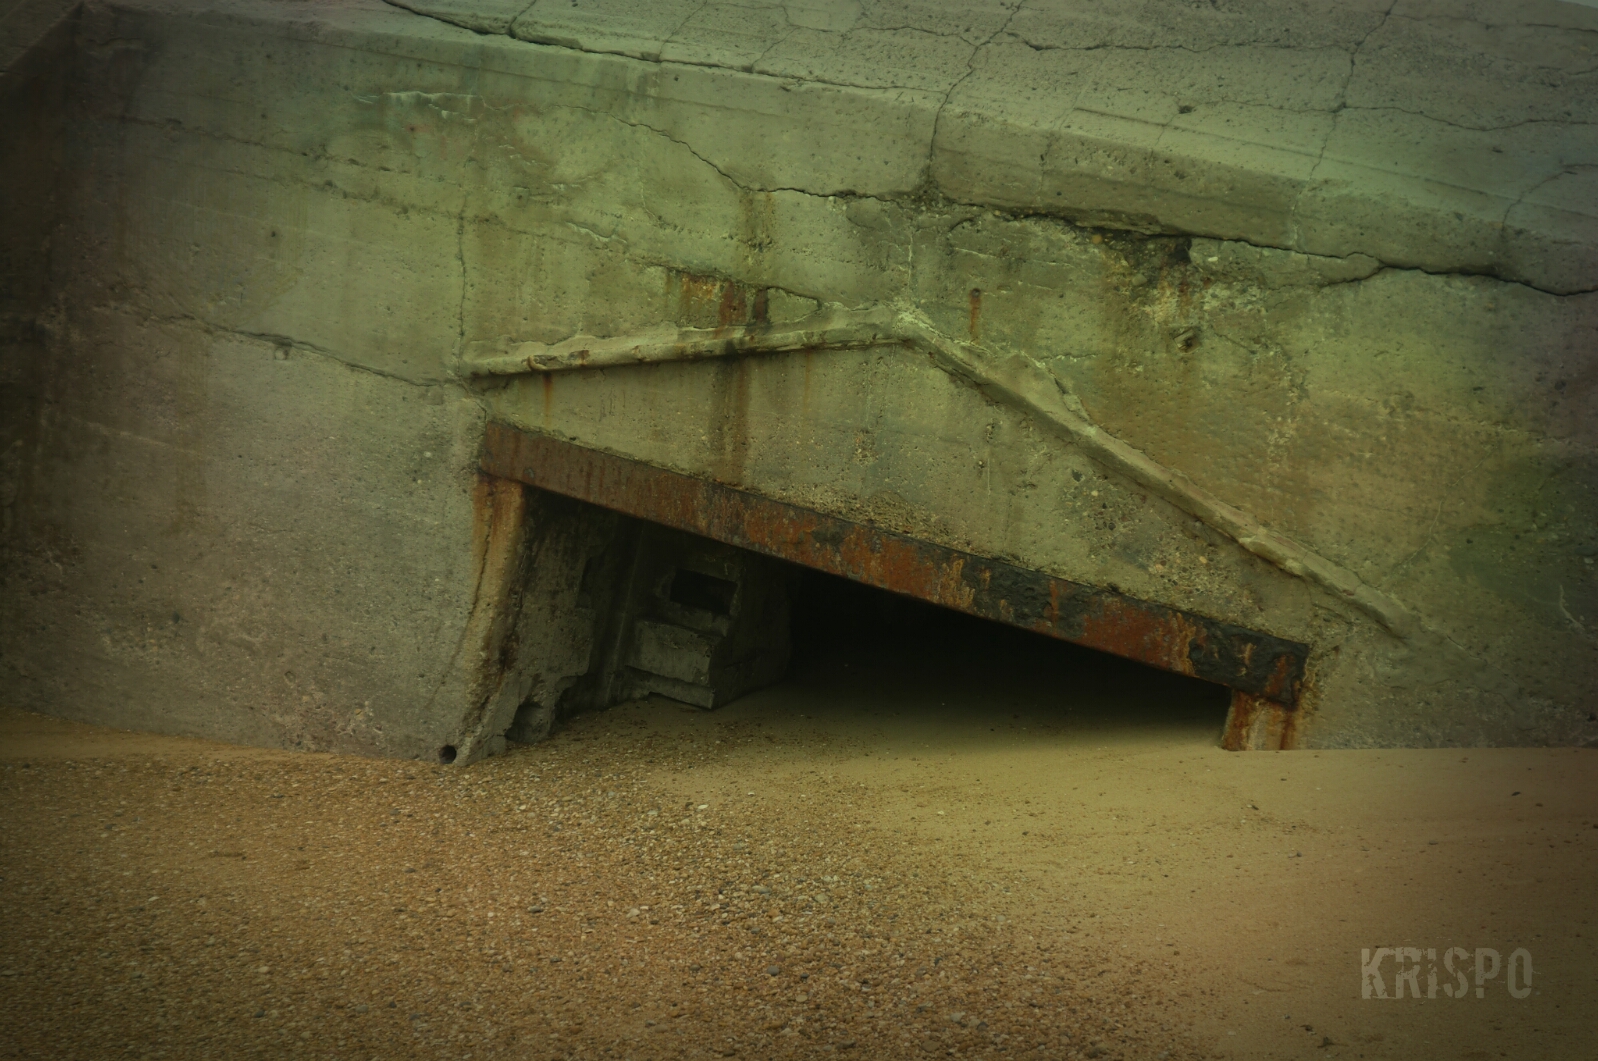 detalle de bunker semienterrado en playa de las landas